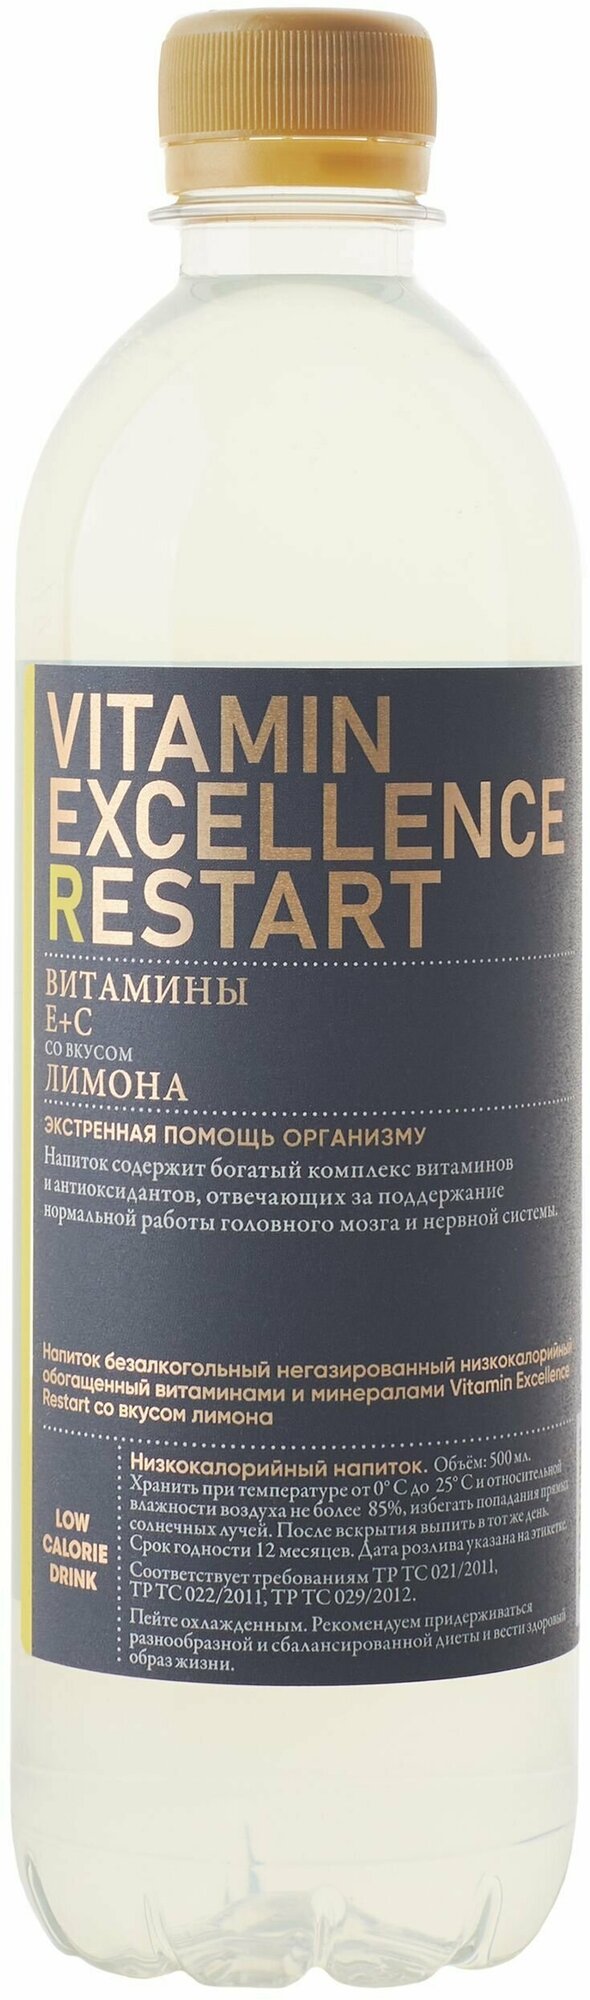 Vitamin Excellence Restart, напиток витаминизированный лимон 500 мл - фотография № 1